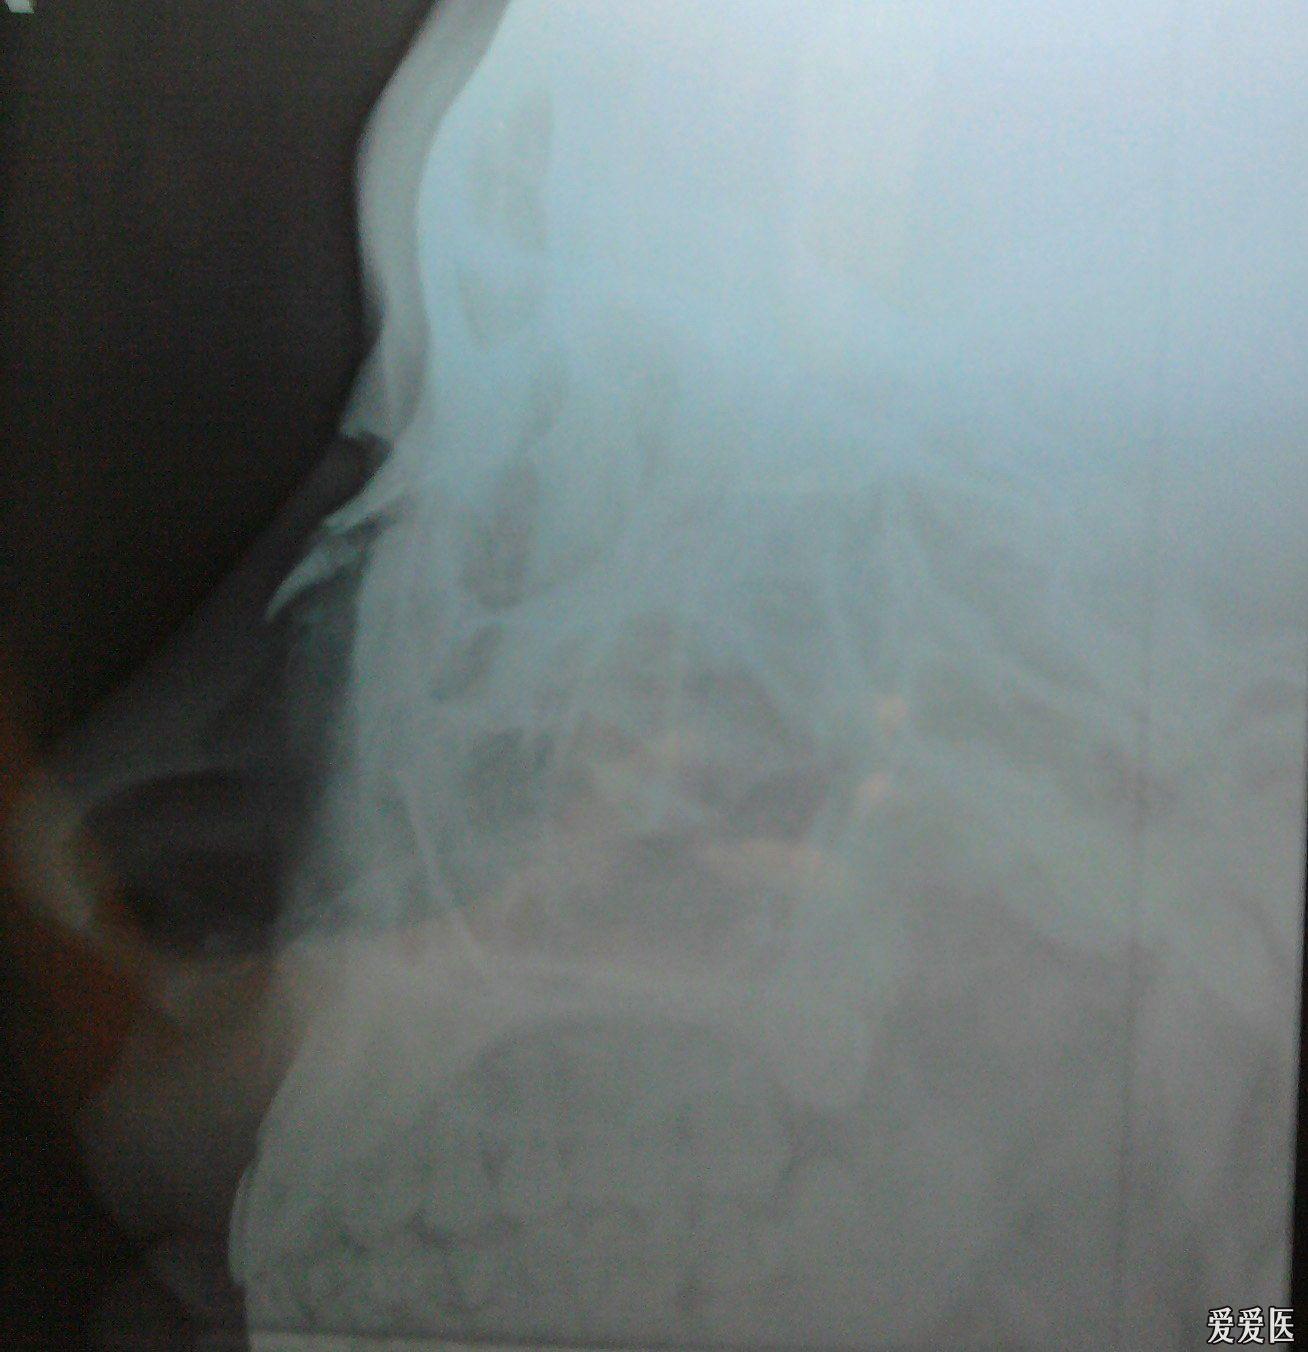 30晚上医院伤后2小时左右照片的结果  x线检查报告单:  片示鼻骨中部